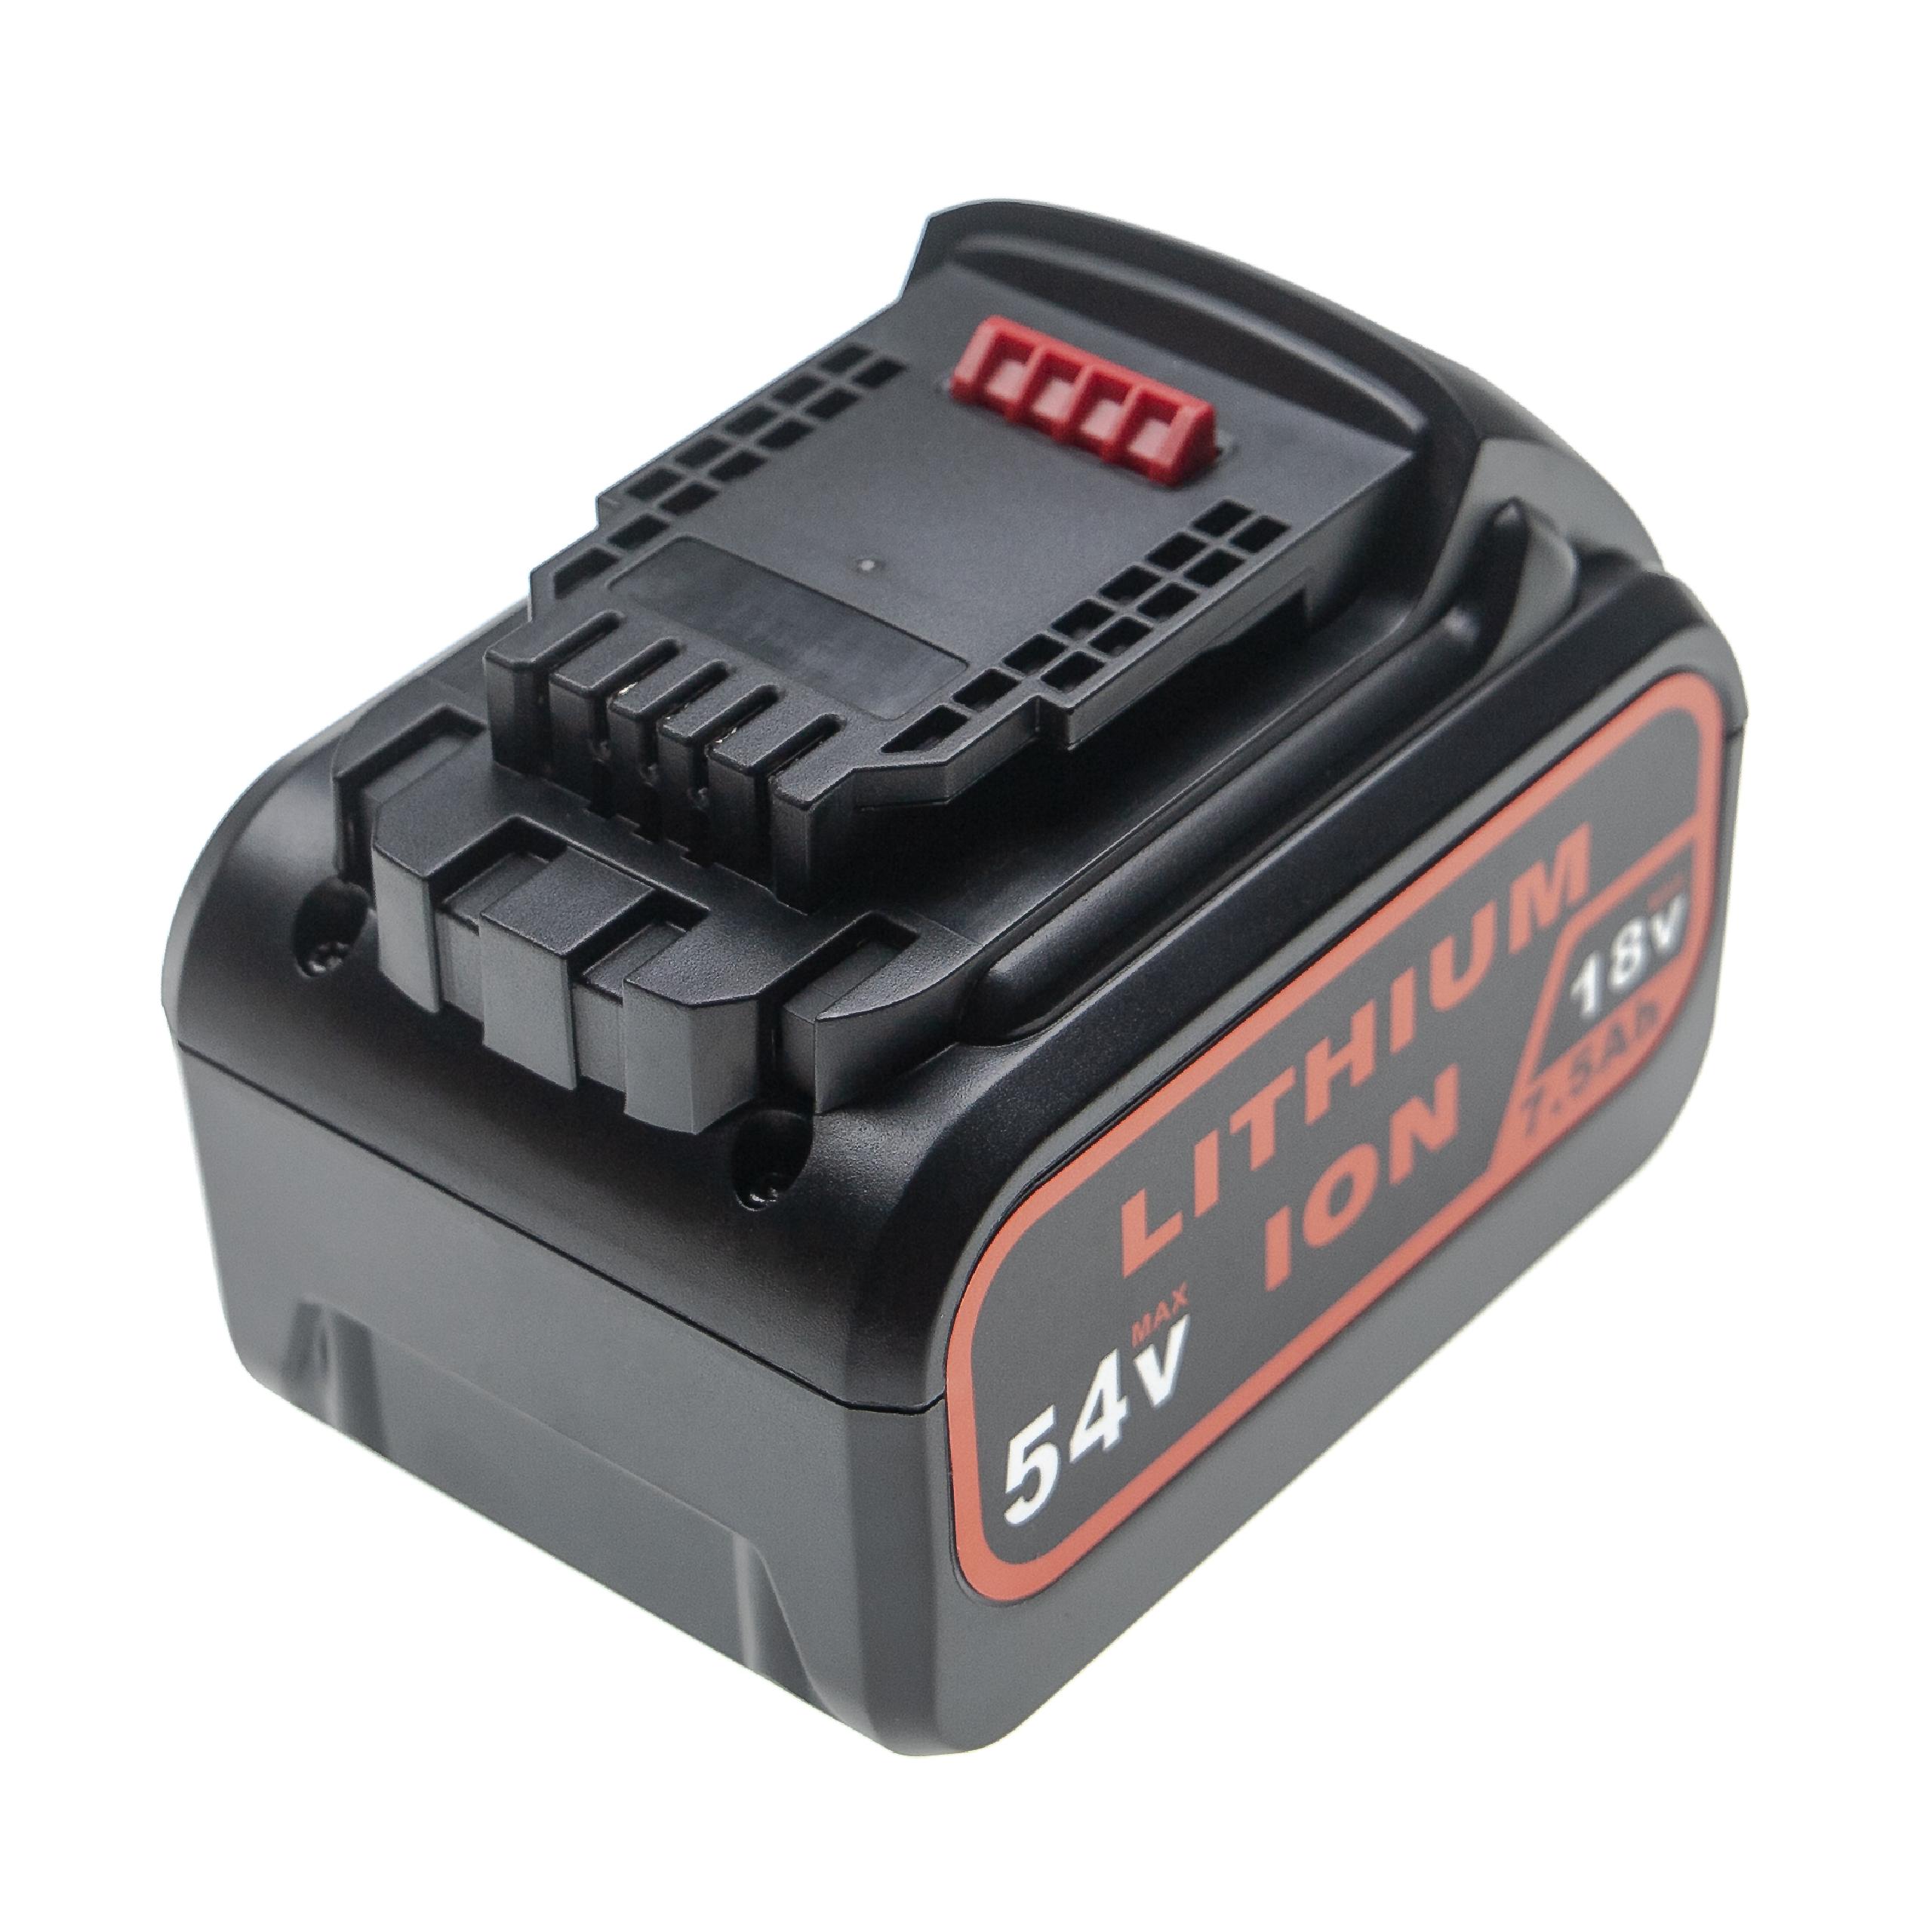 Batterie remplace Dewalt DCB548, FlexVolt, DCB546, DCB547 pour outil électrique - 2500 mAh, 54 V, Li-ion